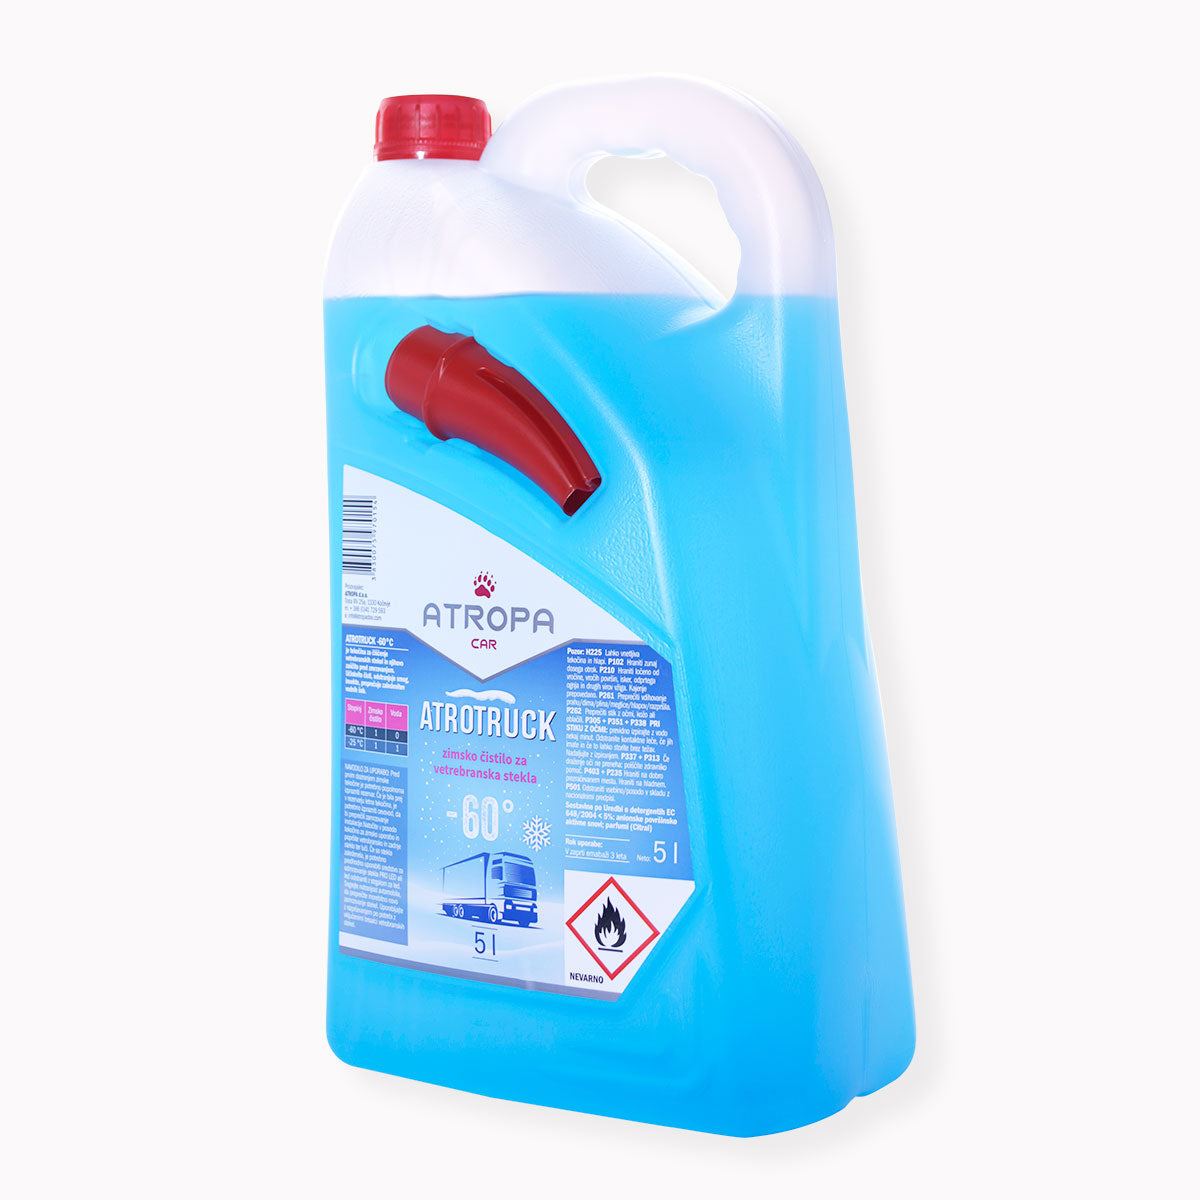 ATROTRUCK zimska tekočina za vetrobransko steklo 5l do -60 °C modre barve v praktični embalaži. Zimska tekočina za vetrobransko steklo je proizvedena v sloveniji.